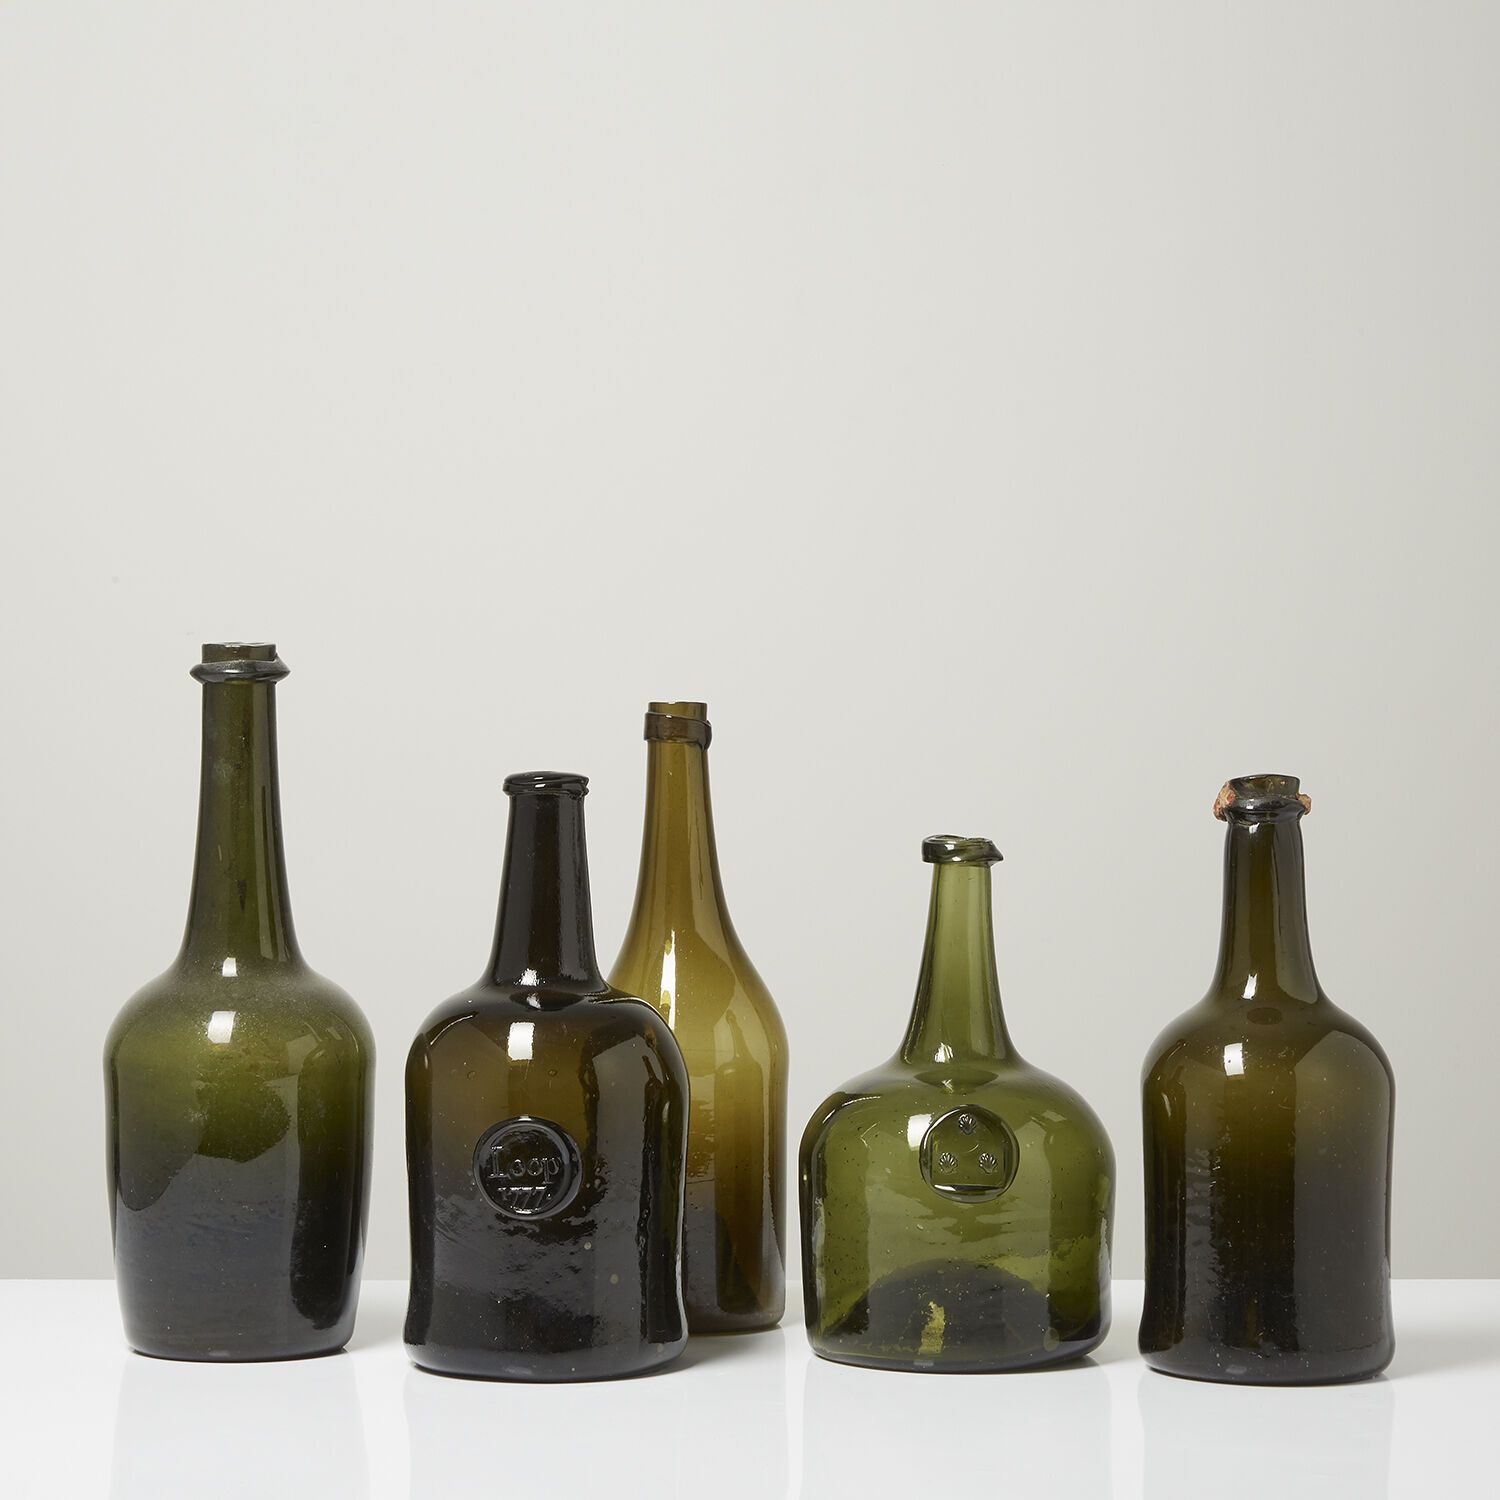 LOT DE CINQ BOUTEILLES EN VERRE TEINTÉ VERT, ÉPOQUE XVIIIe SIÈCLE 一套五个绿色的有色玻璃瓶。
&hellip;